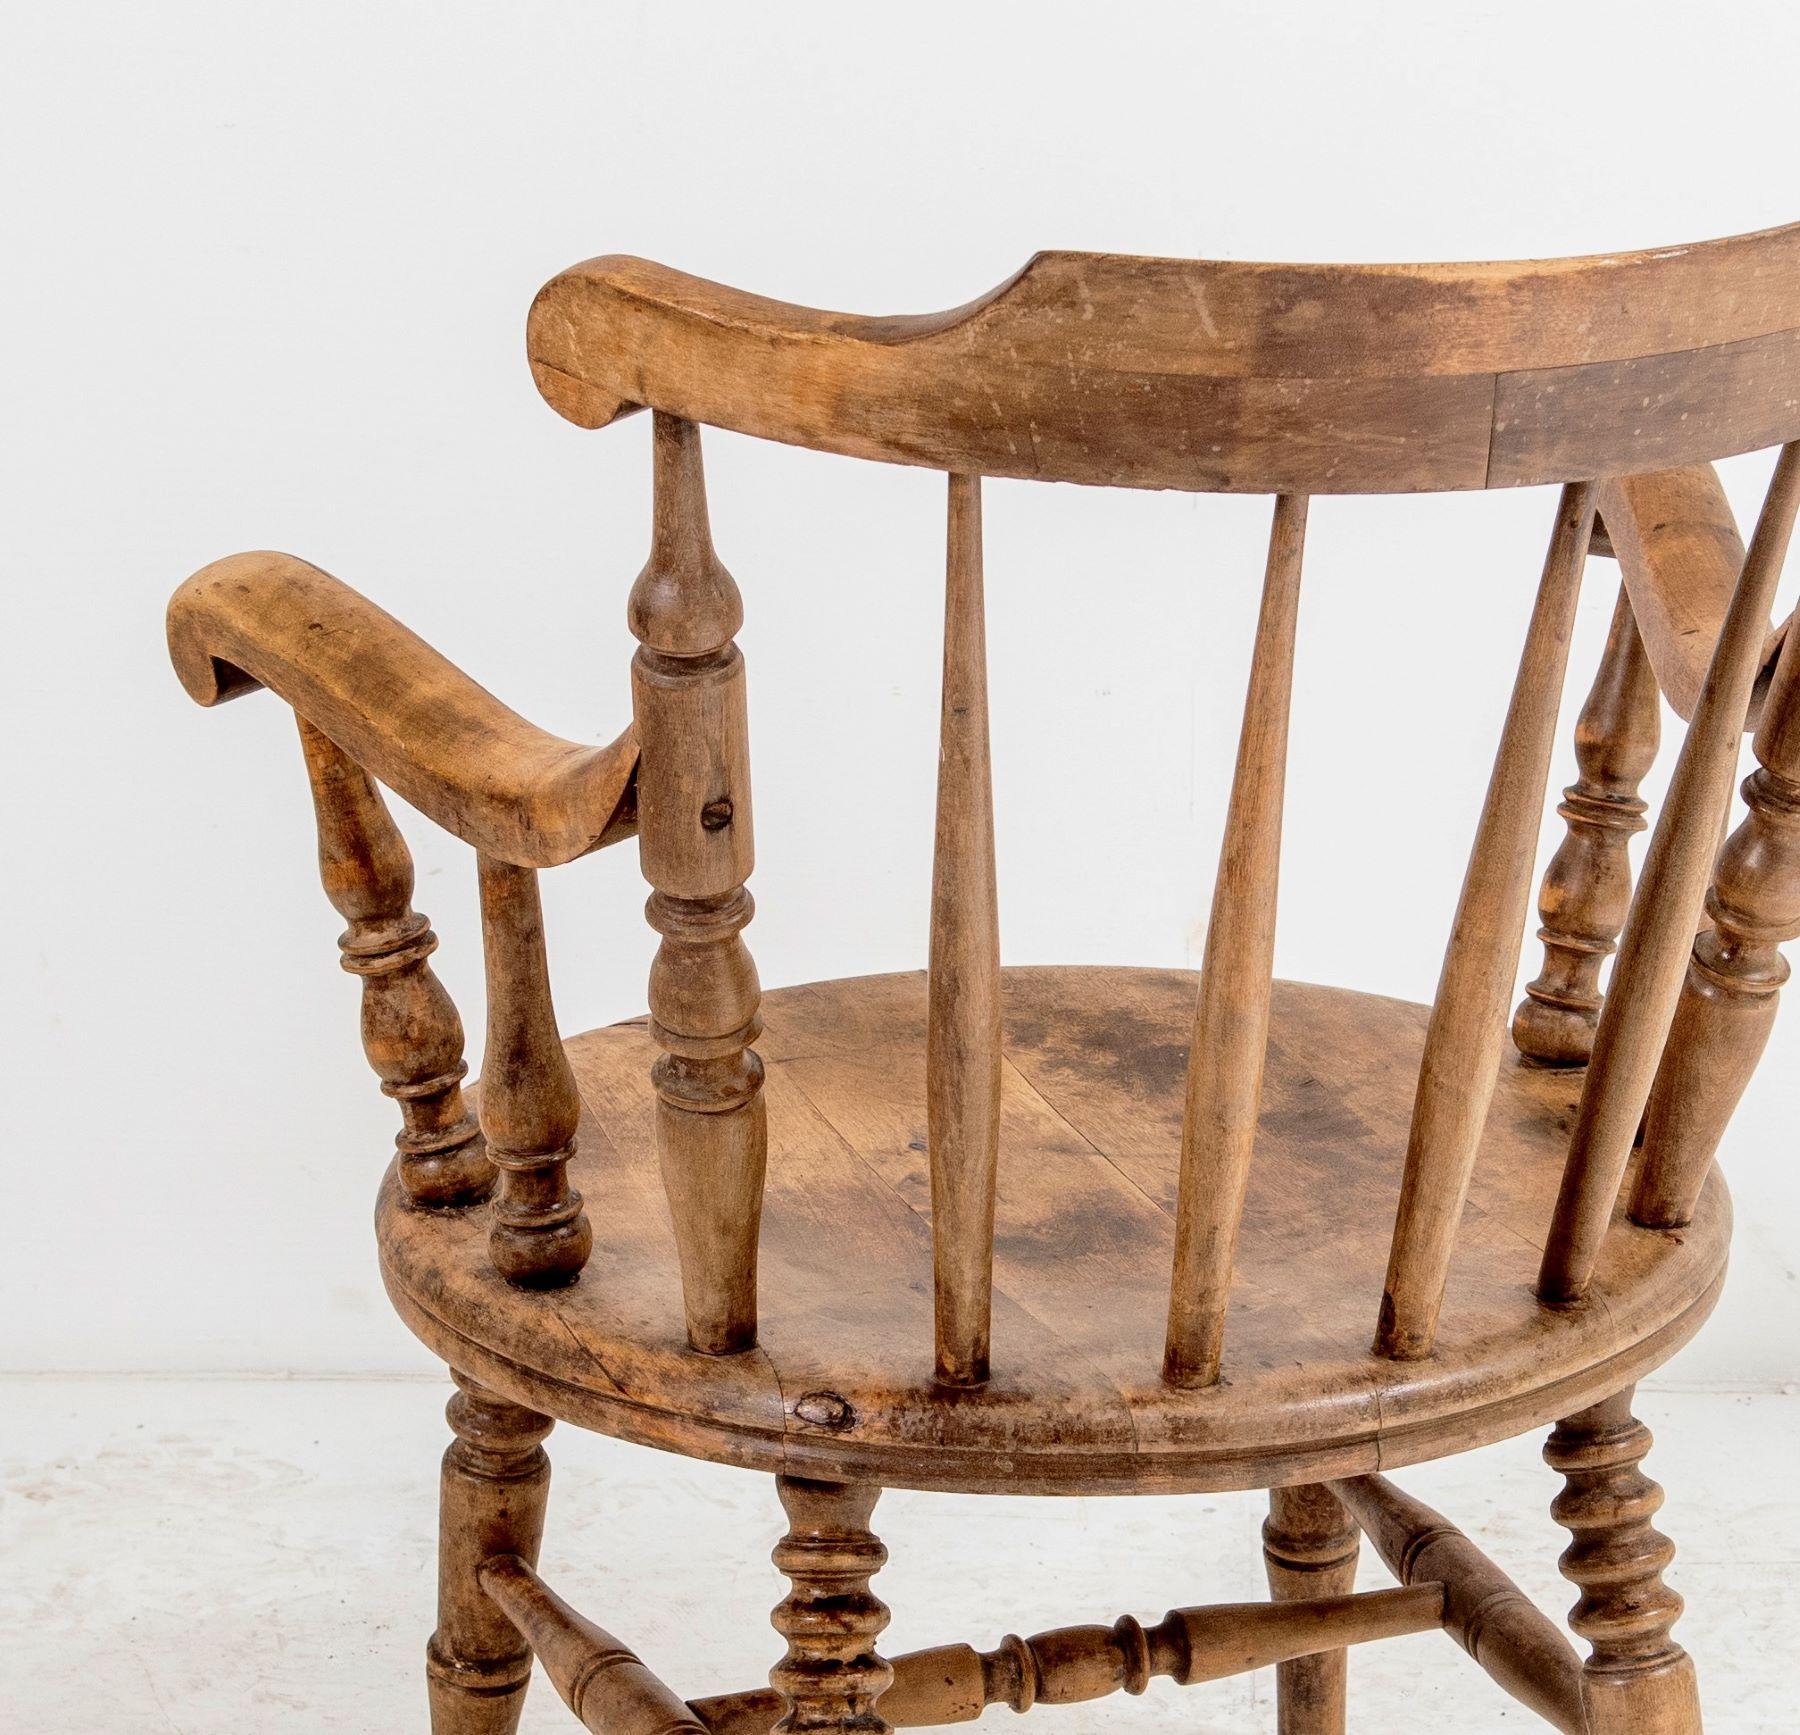 Un beau fauteuil Windsor à dossier bas, de forme et de couleur magnifiques. Construite en bois massif avec une assise ronde en orme, la chaise a un dossier bas incurvé menant à de larges bras évasés sur des fuseaux tournés en bobine.
L'assise est